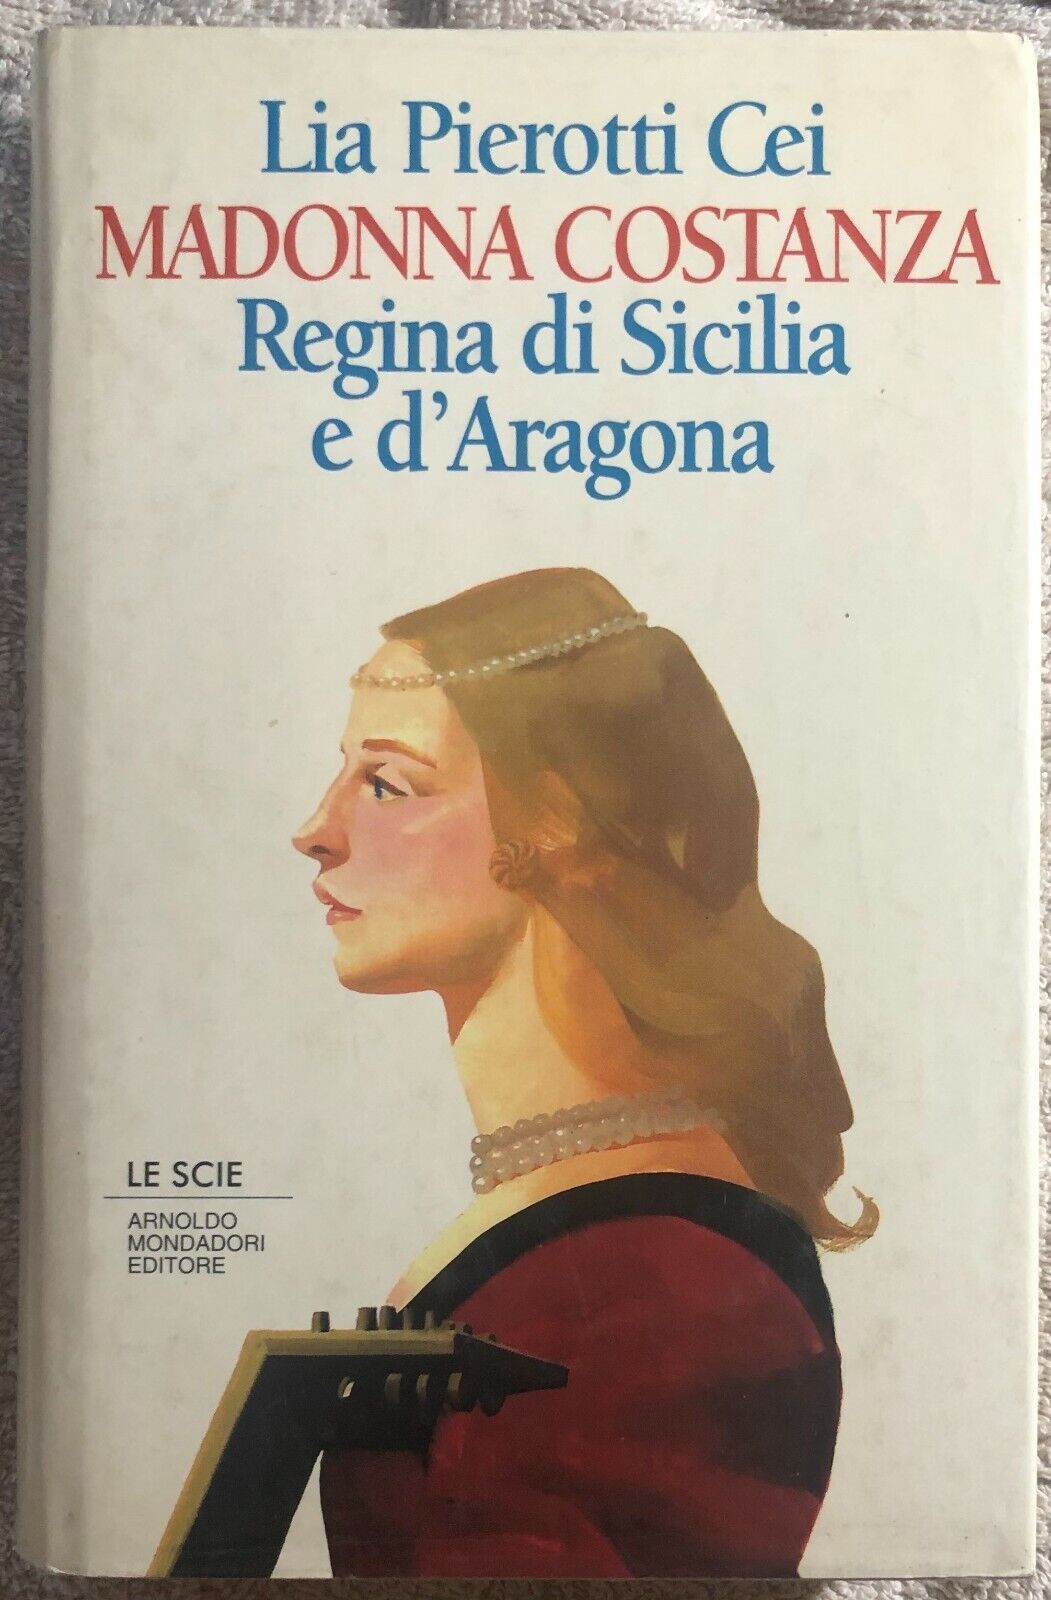 Madonna Costanza regina di Sicilia e d'Aragona di Lia Pierotti Cei,  1995,  Arno